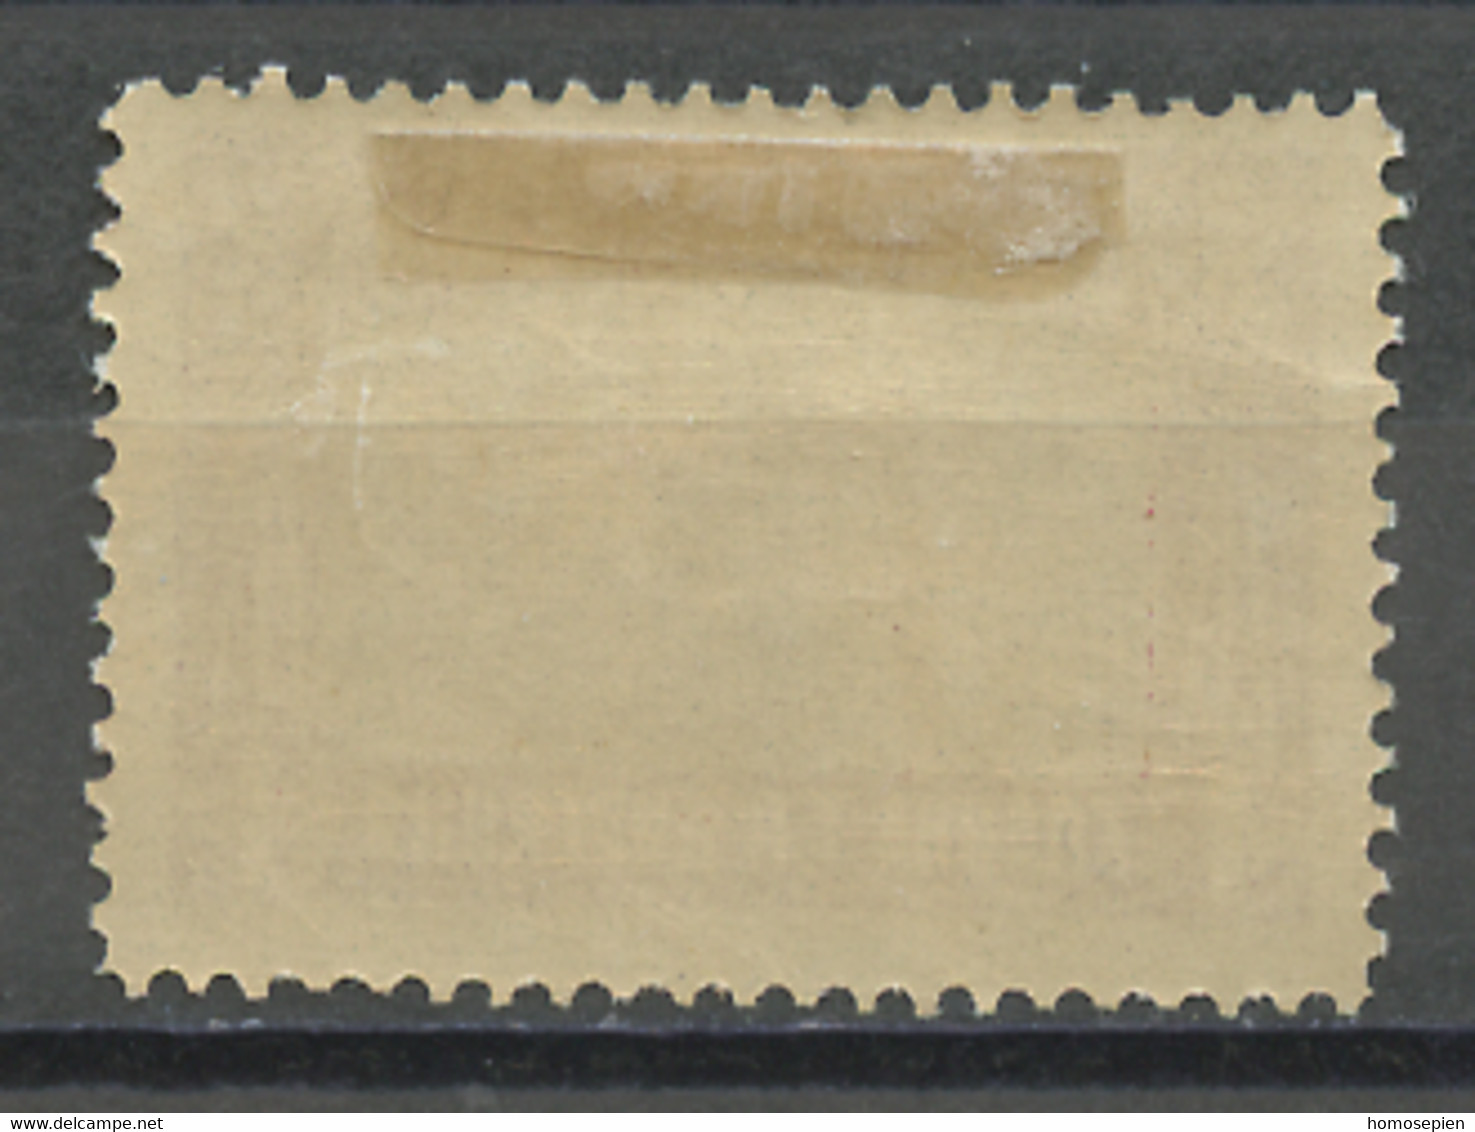 Bulgarie - Bulgarien - Bulgaria Exprès 1930-31 Y&T N°EXP12 - Michel N°EM12 * - 1l Maison De Repos De Banja - Express Stamps